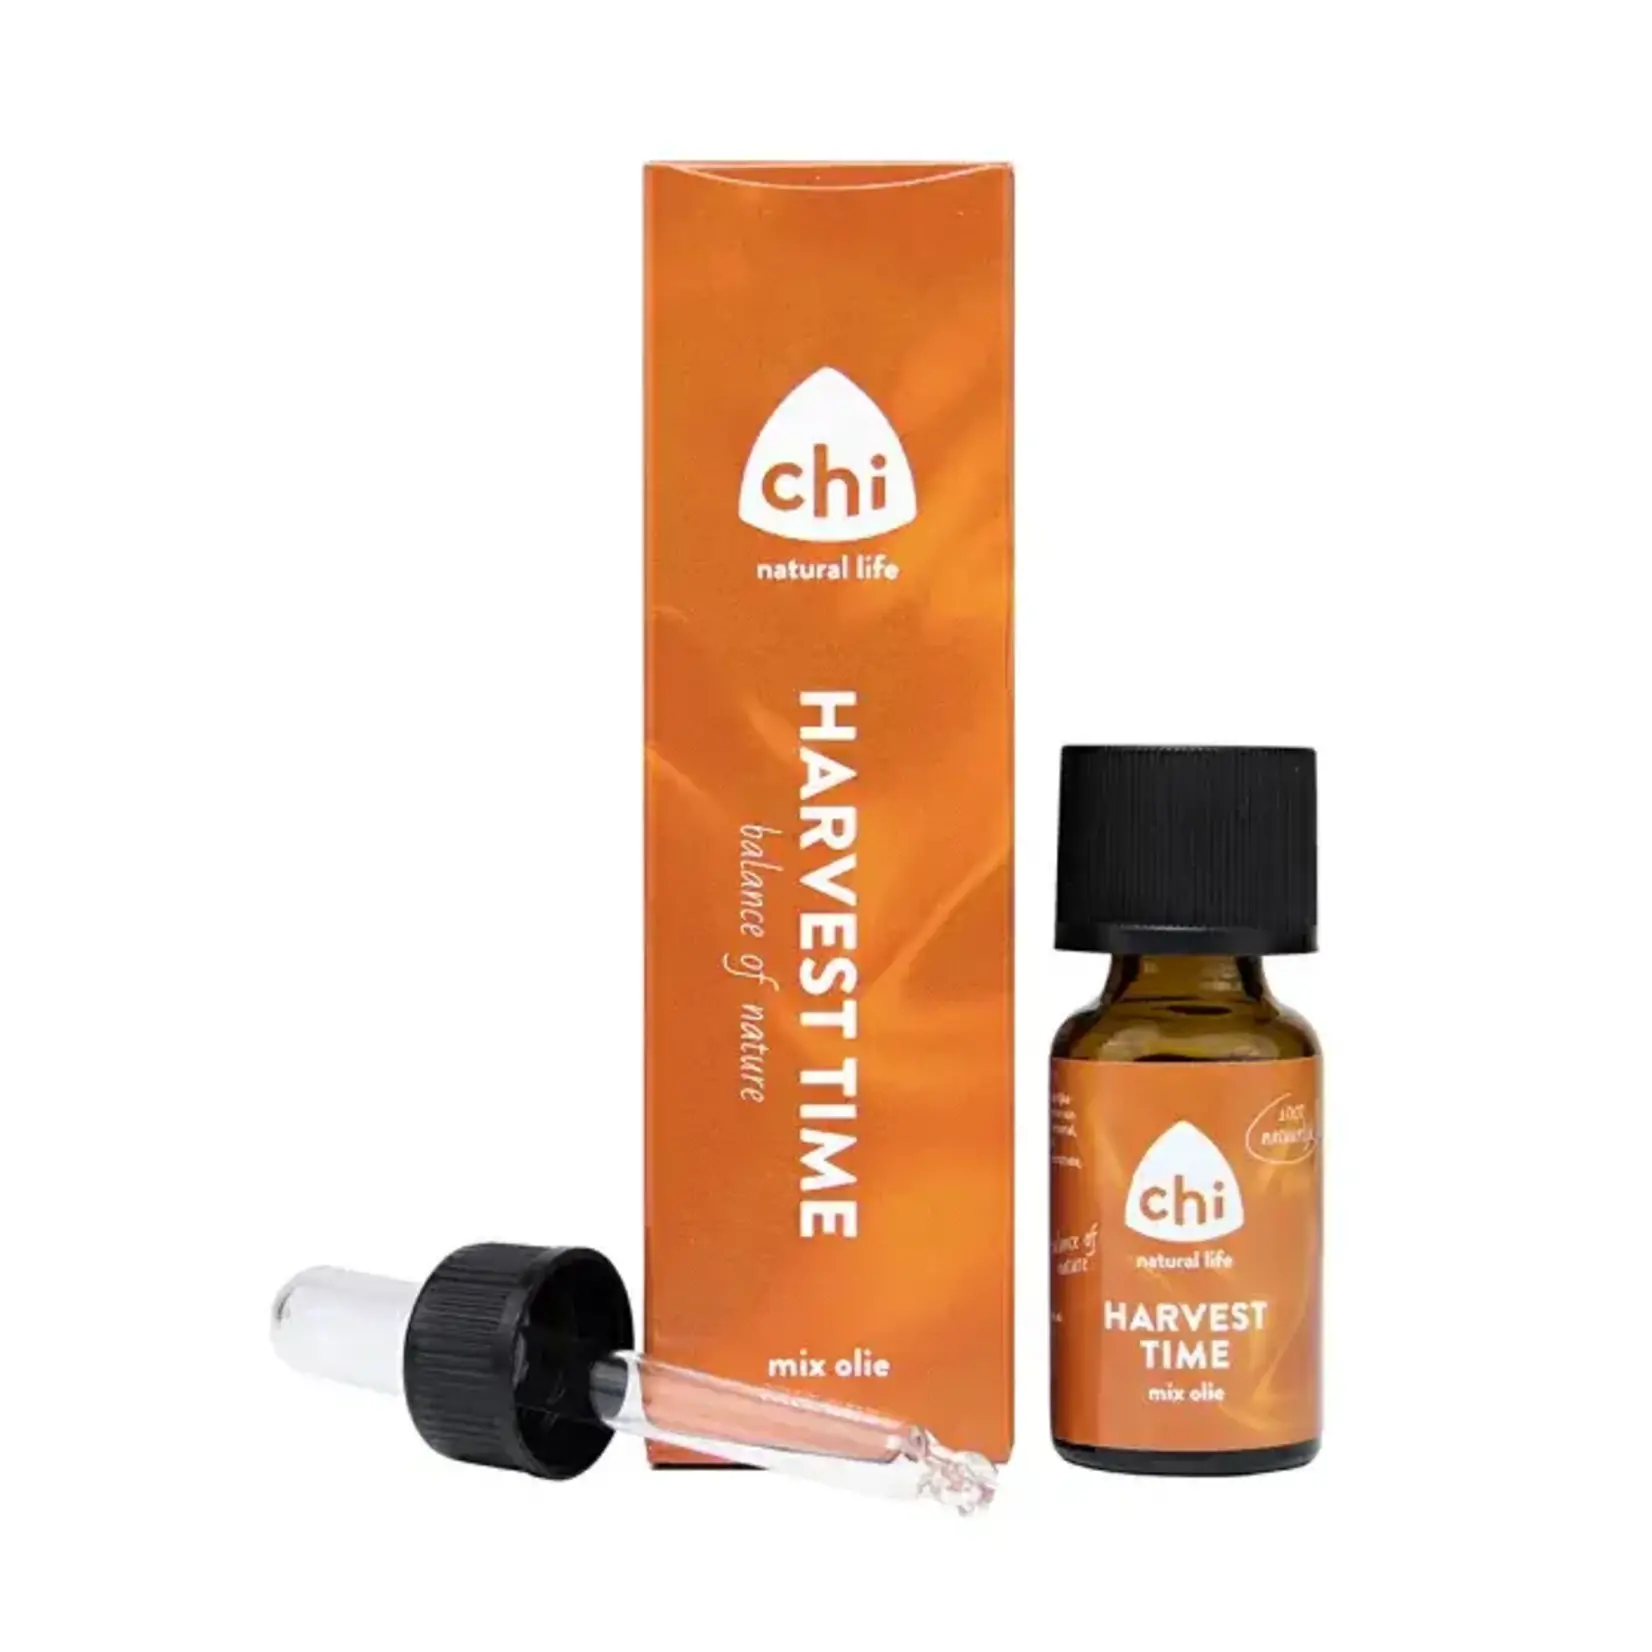 Chi Natural Life Harvest Time Mix olie + Gratis Geursteentje Aromastone Wood